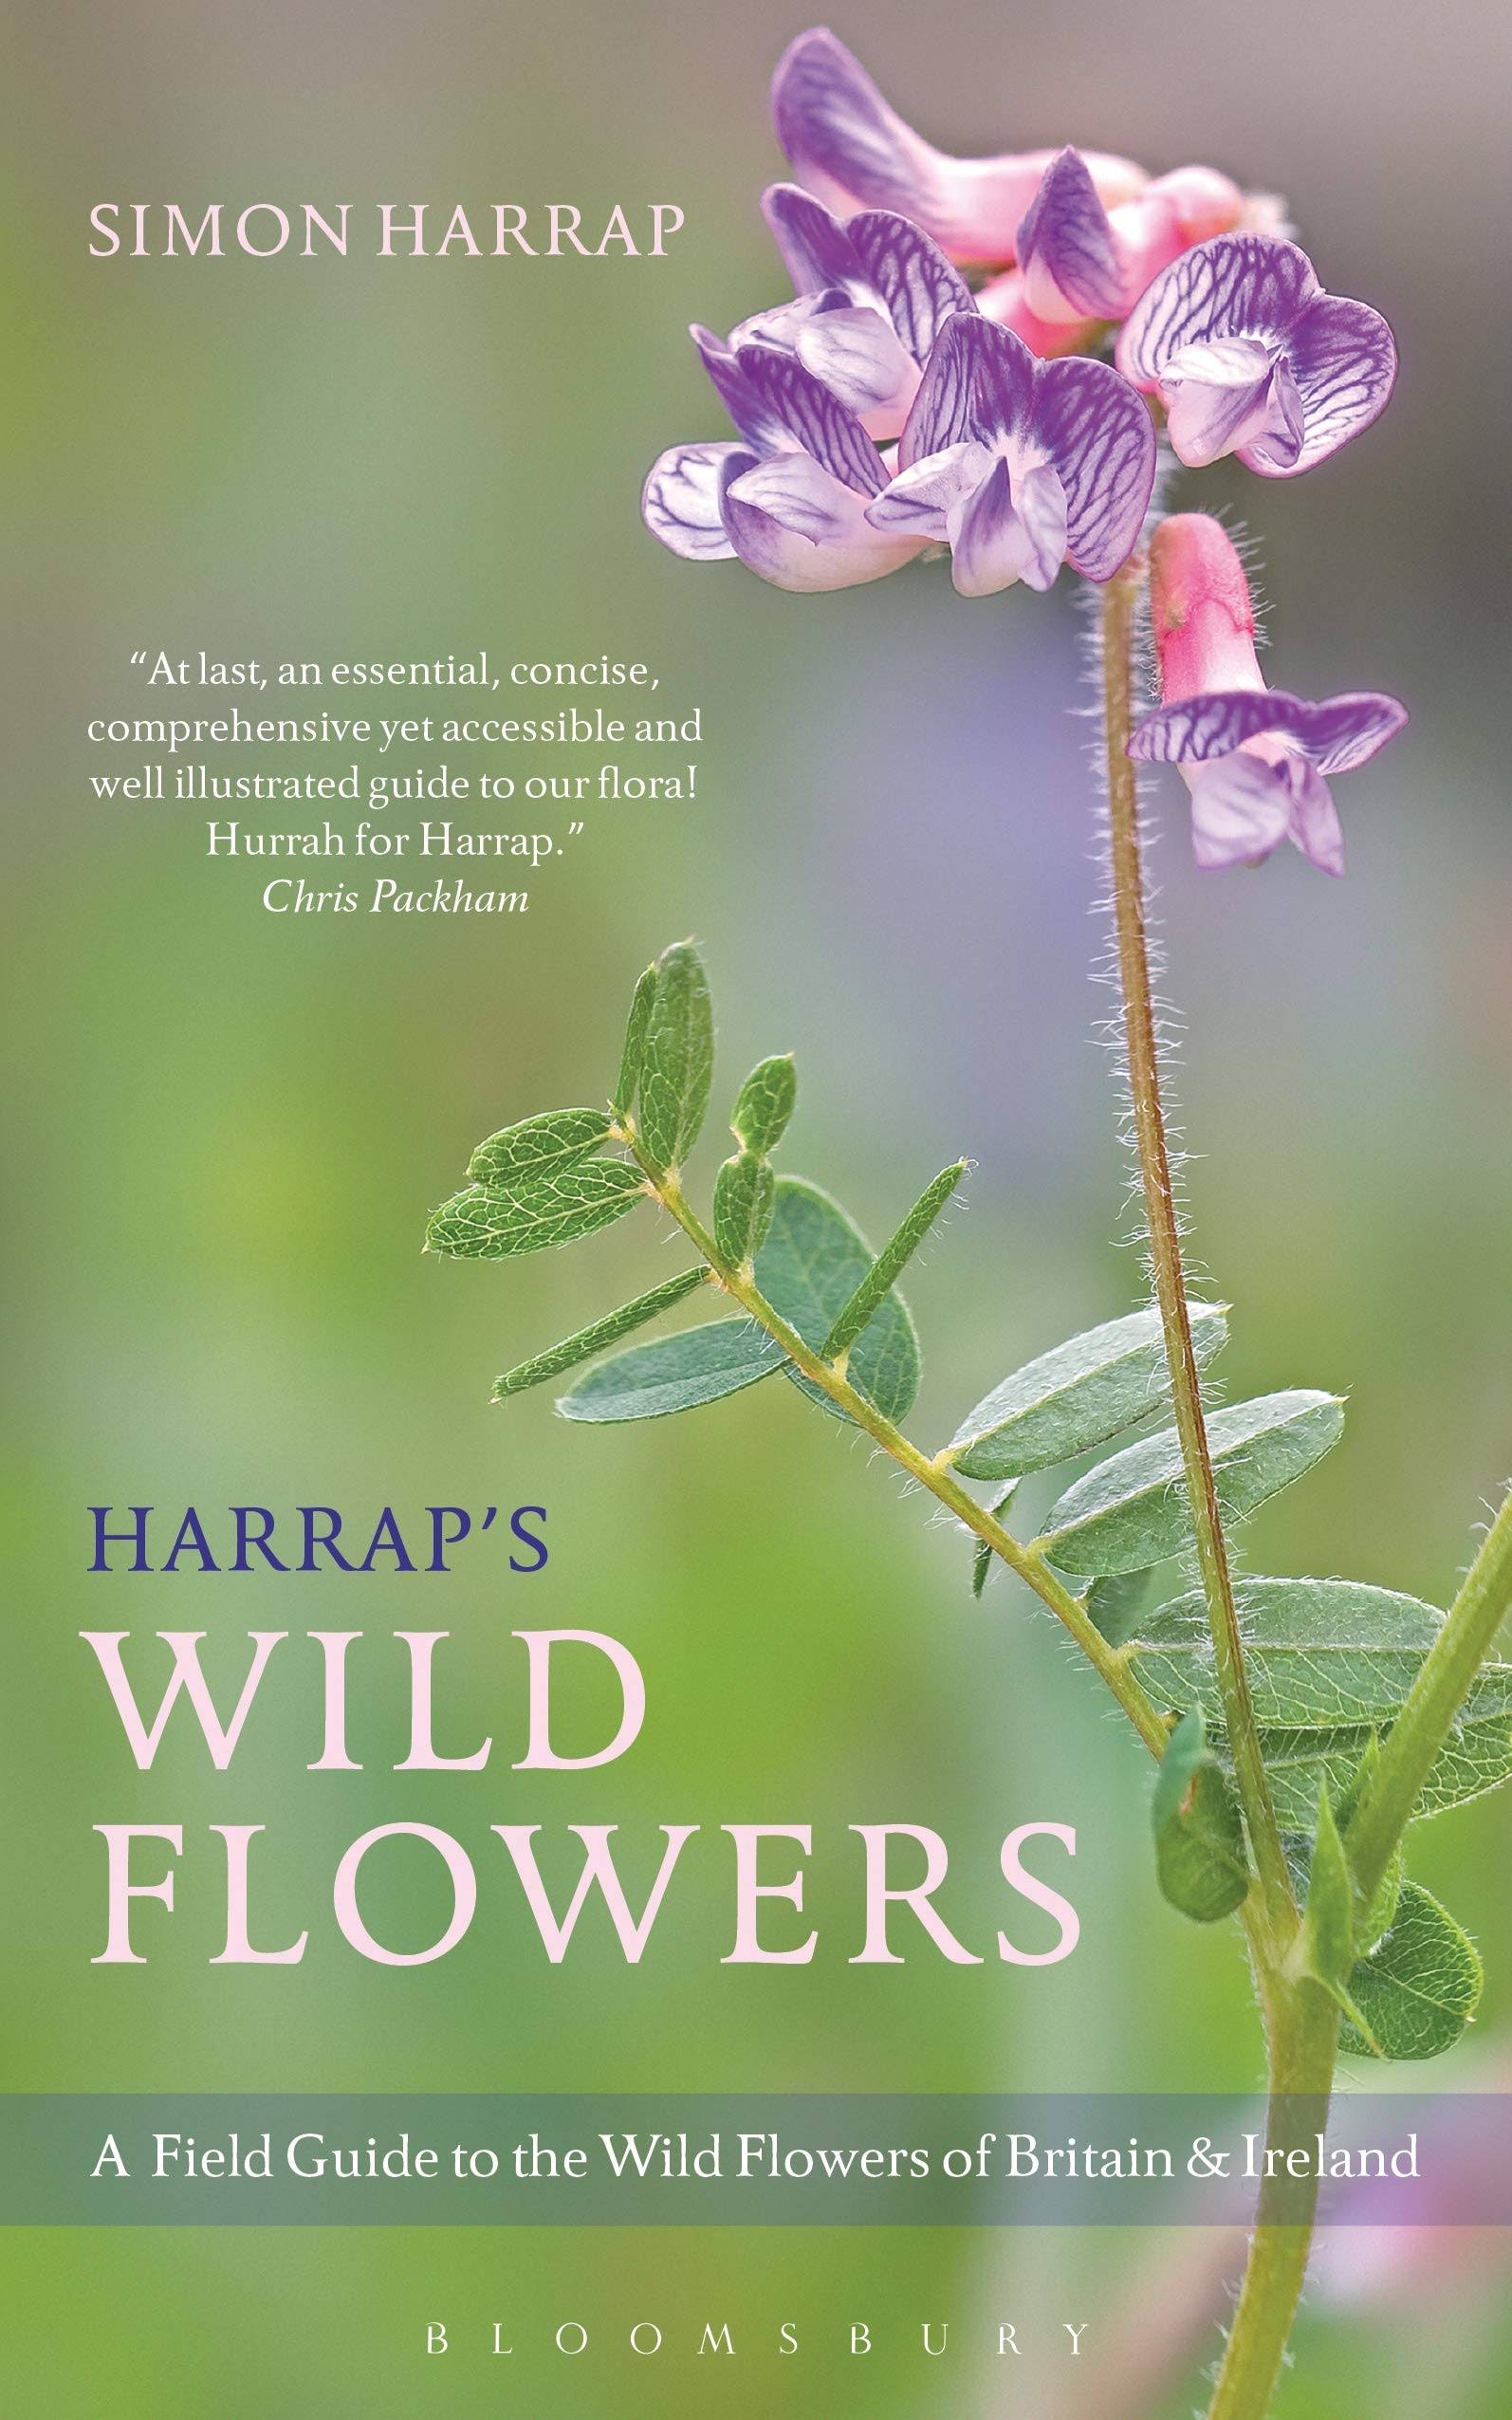 Harrap's Wild Flowers by Simon Harrap